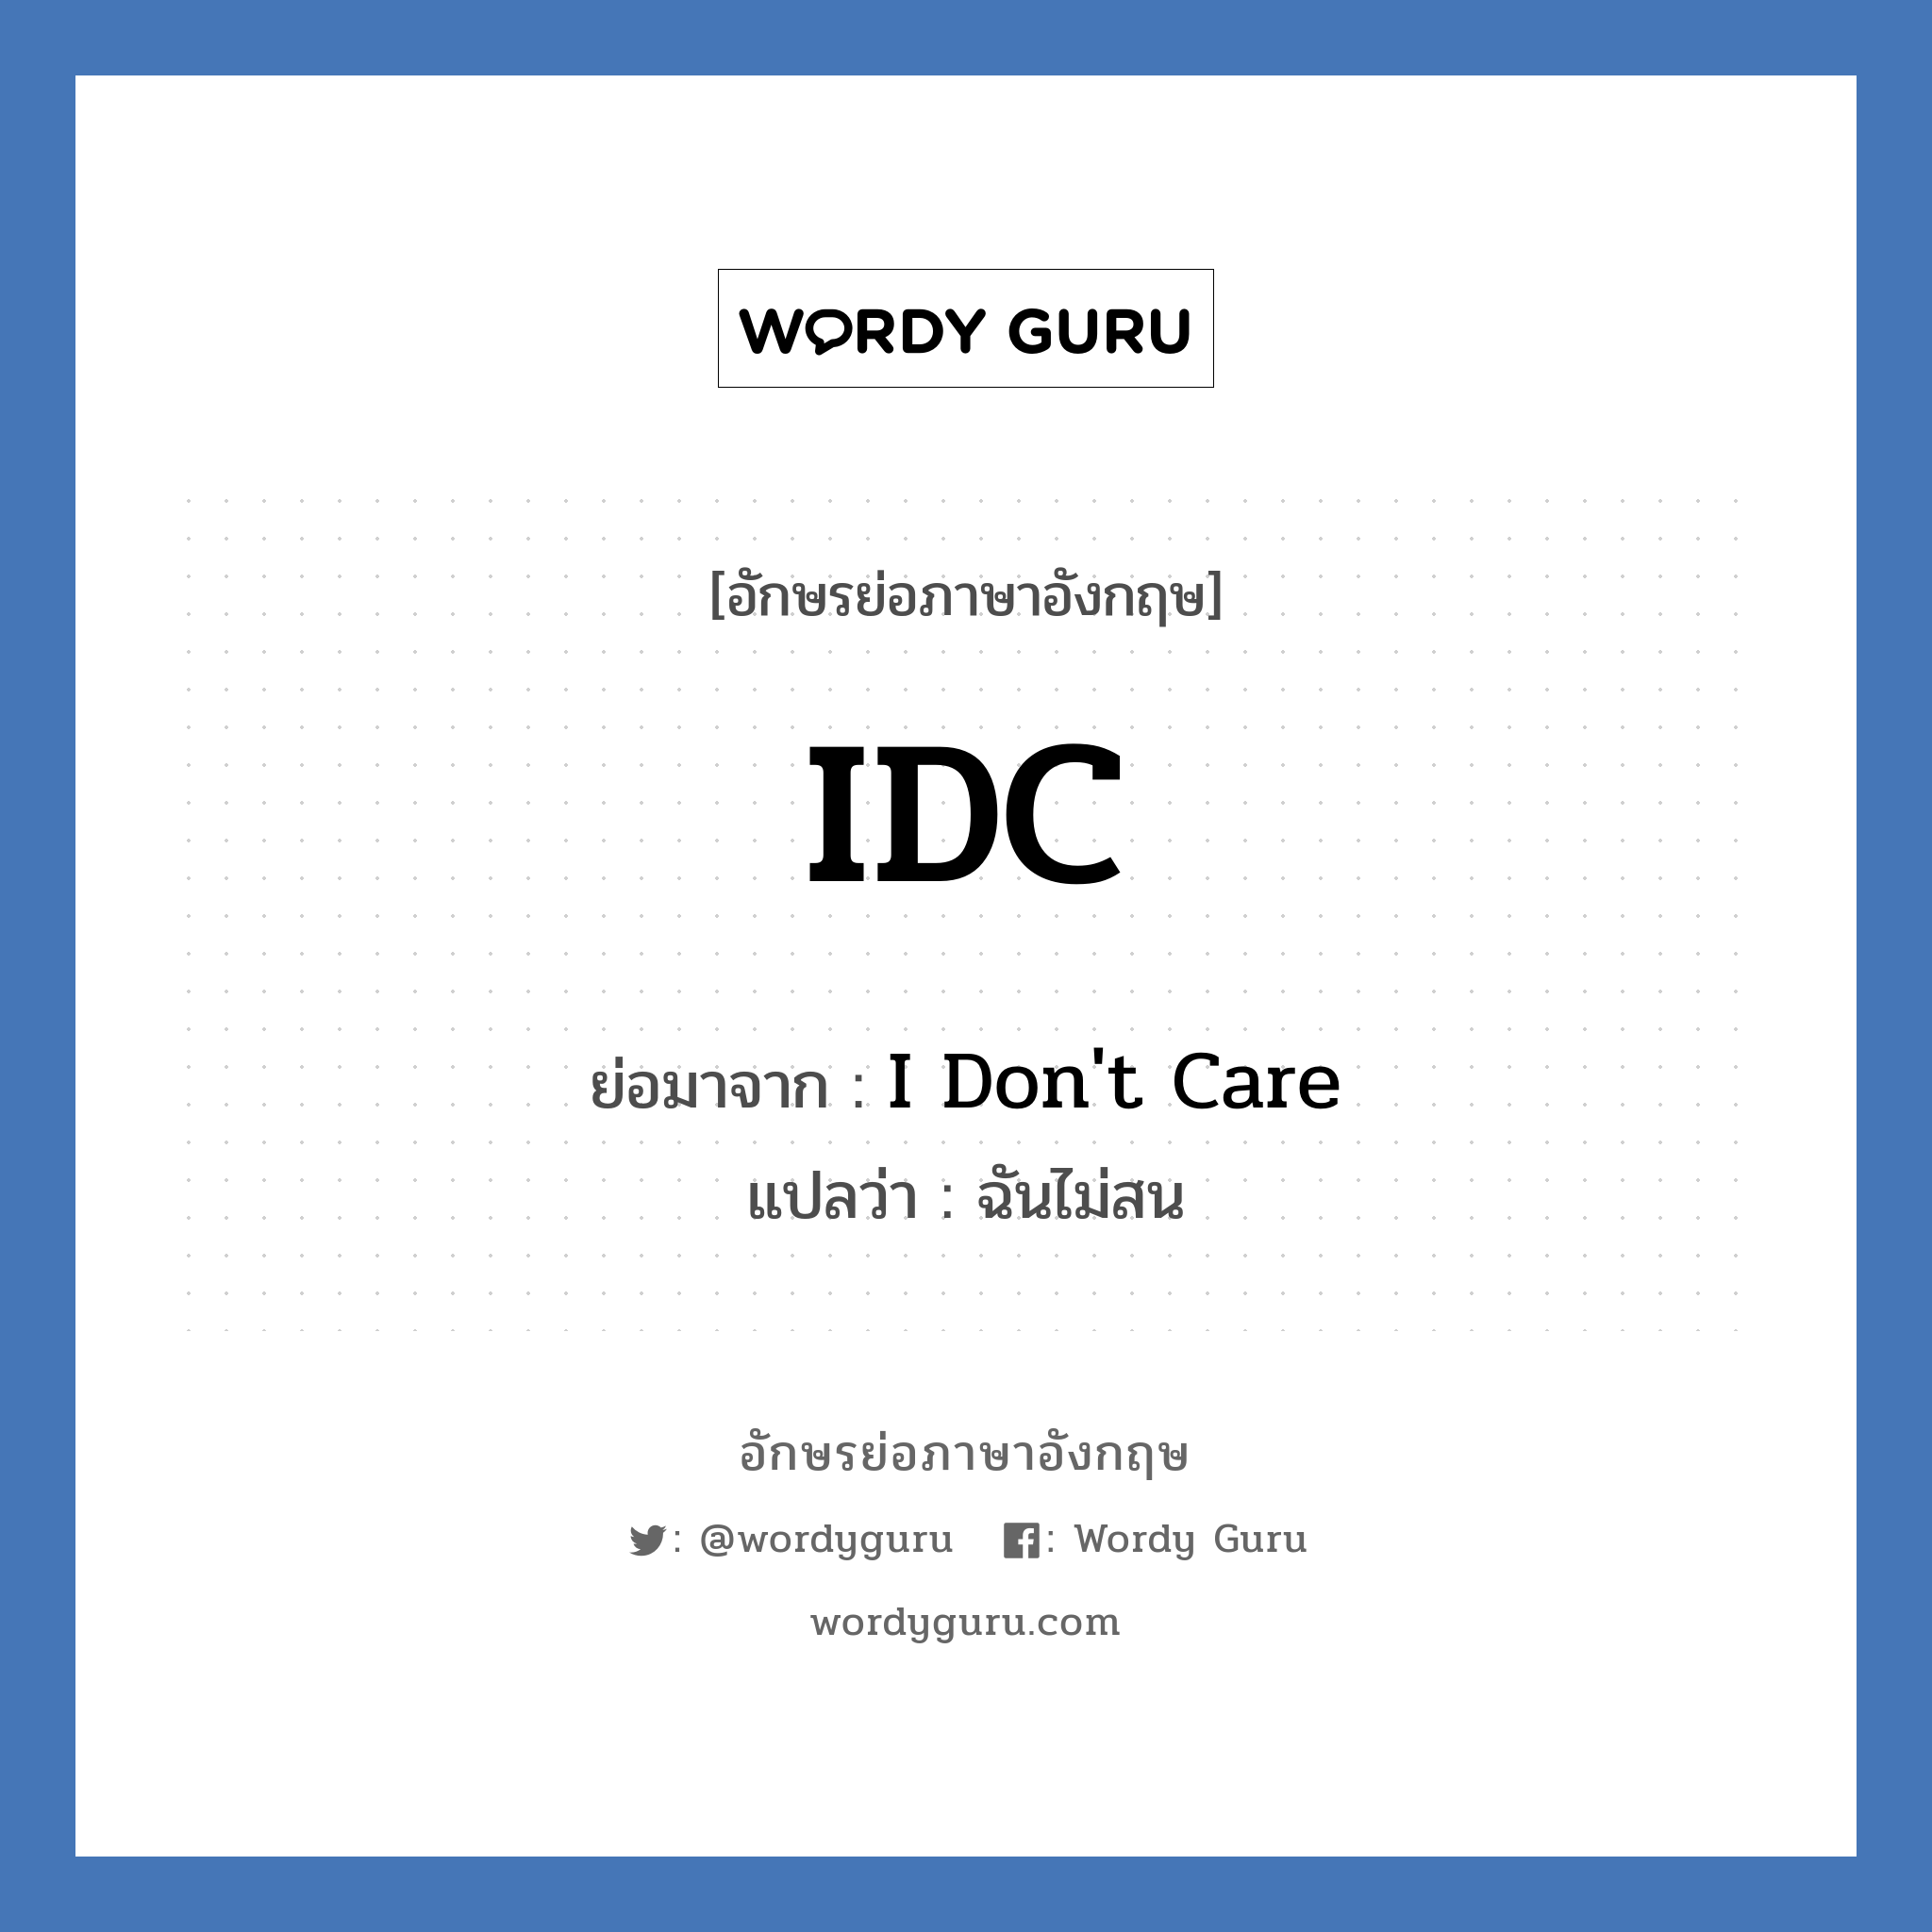 IDC ย่อมาจาก? แปลว่า?, อักษรย่อภาษาอังกฤษ IDC ย่อมาจาก I Don't Care แปลว่า ฉันไม่สน